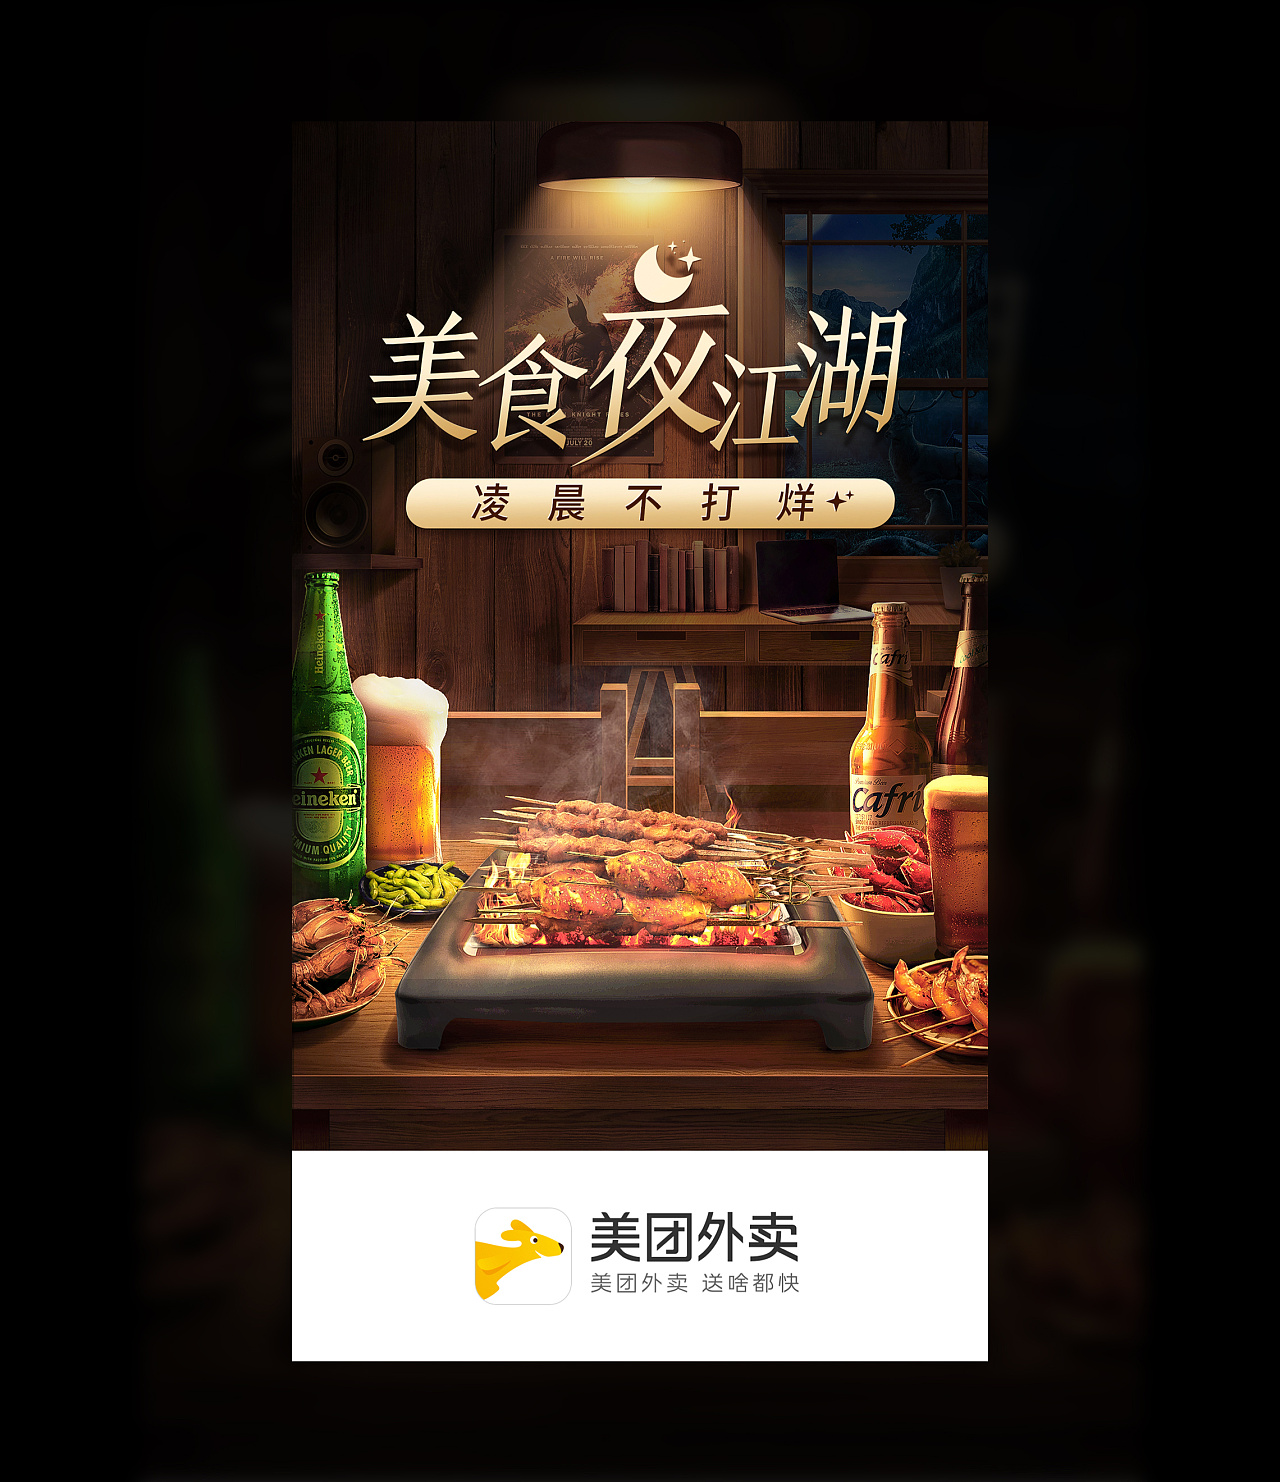 重庆夜宵美食攻略：高压锅生蚝18.8元一锅，吃完只需5分钟 – 重庆游品